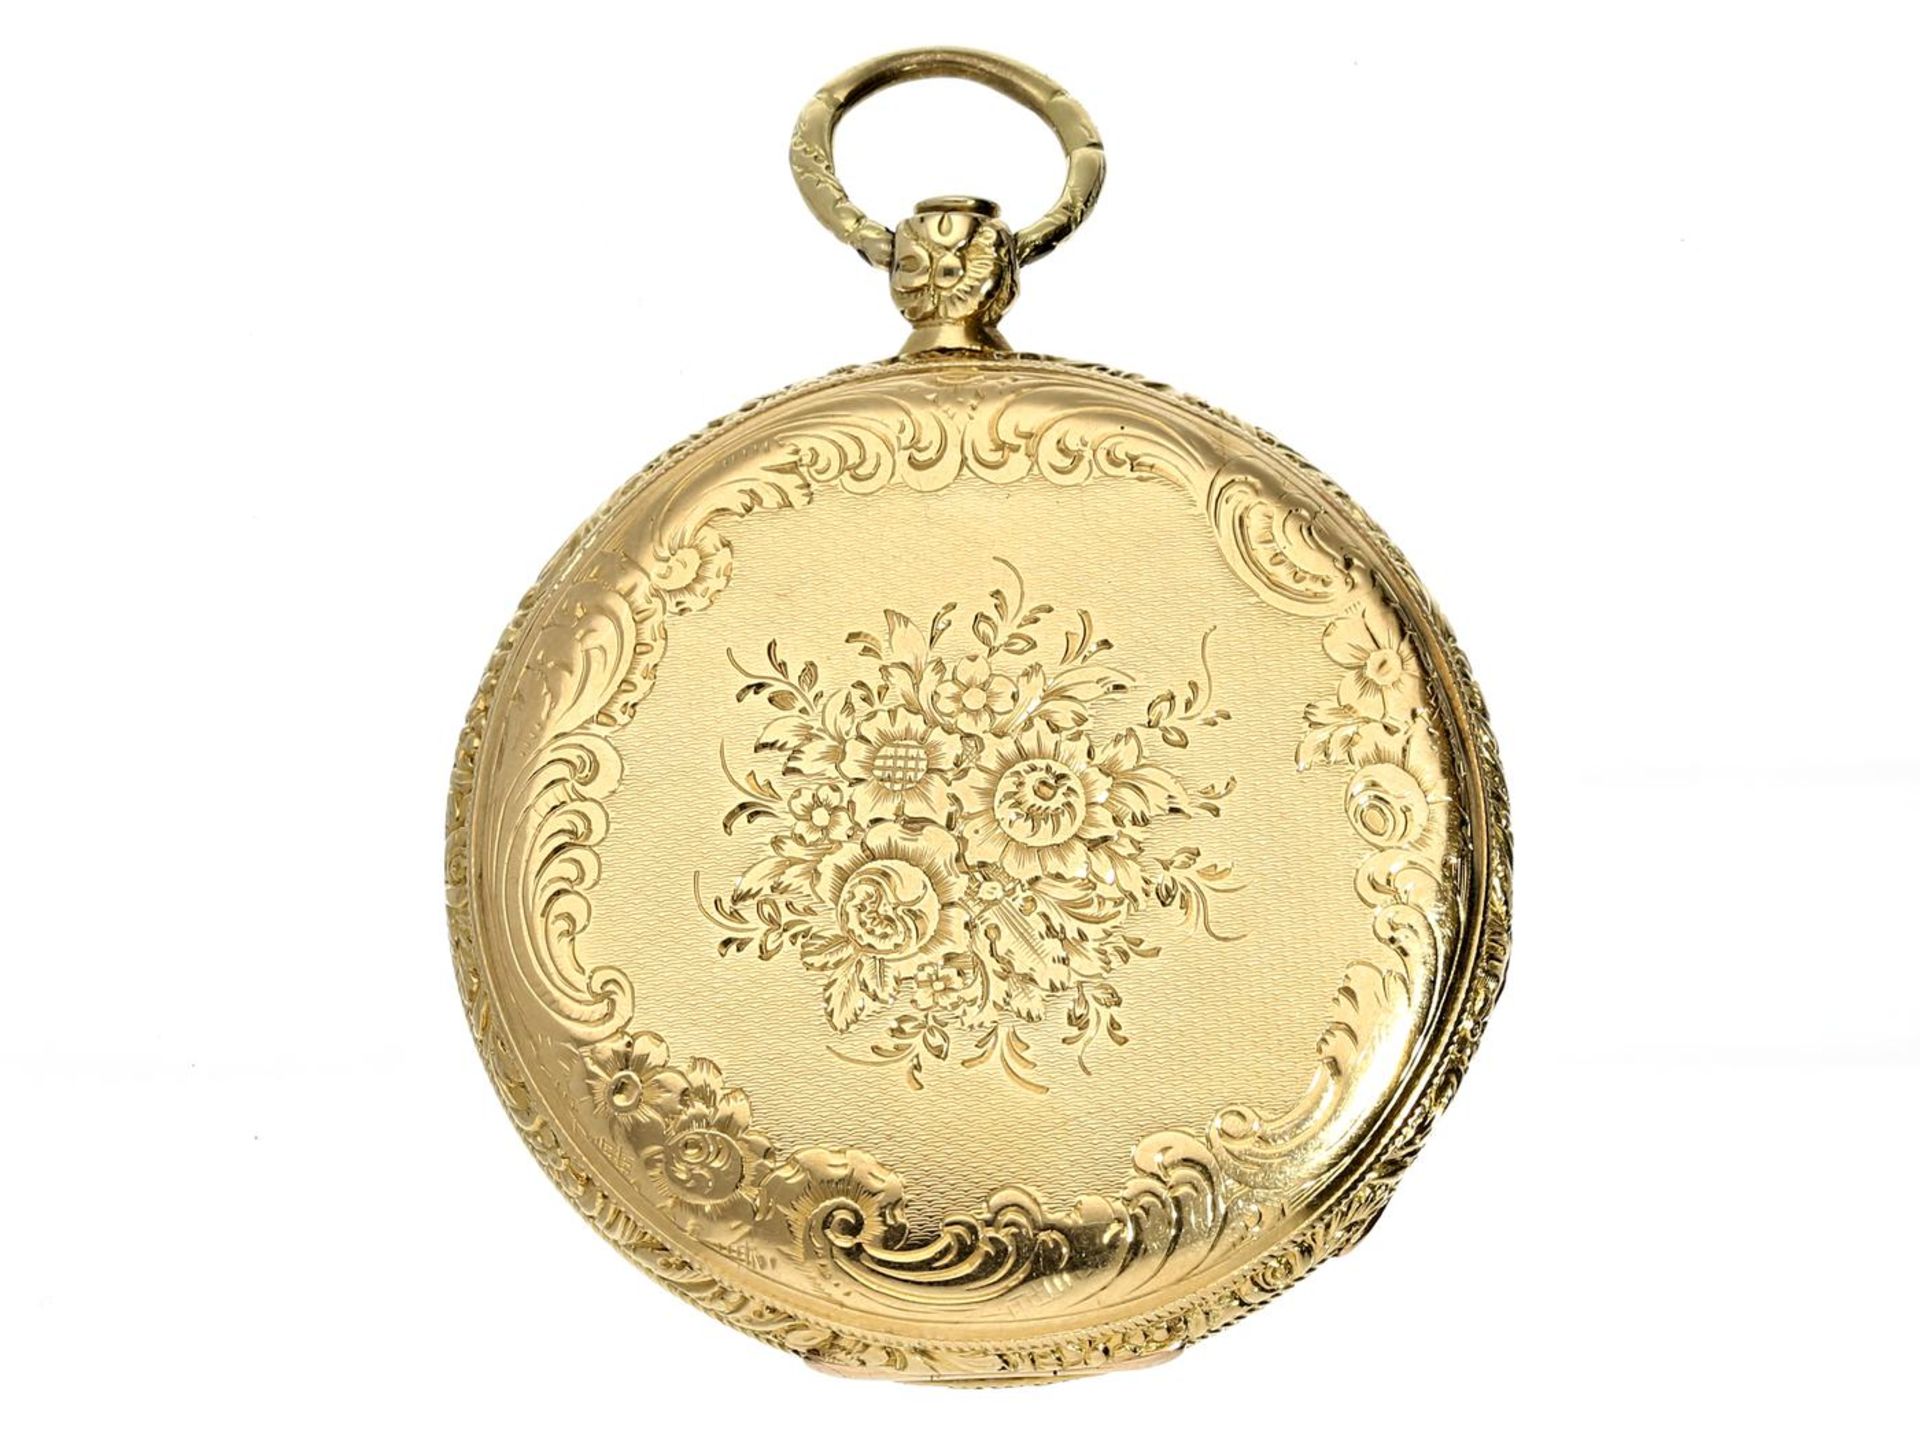 Taschenuhr: feine 18K Lepine, um 1840 Ca.Ø40mm, ca. 34g, 18K Gold, prächtig graviert, - Bild 3 aus 3